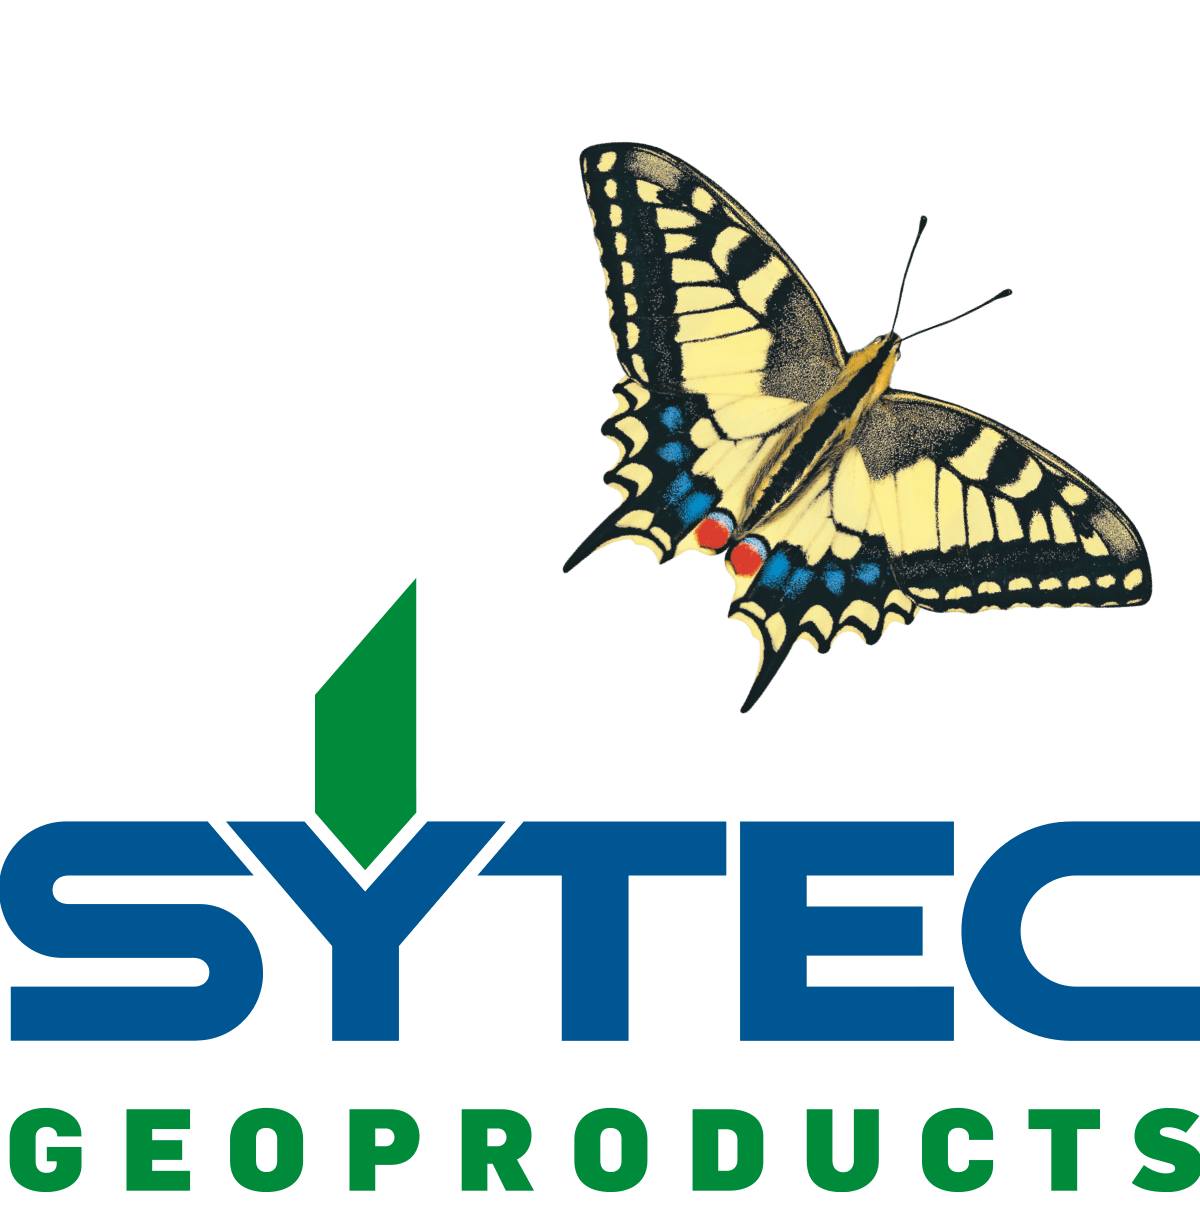 SYTEC Bausysteme AG